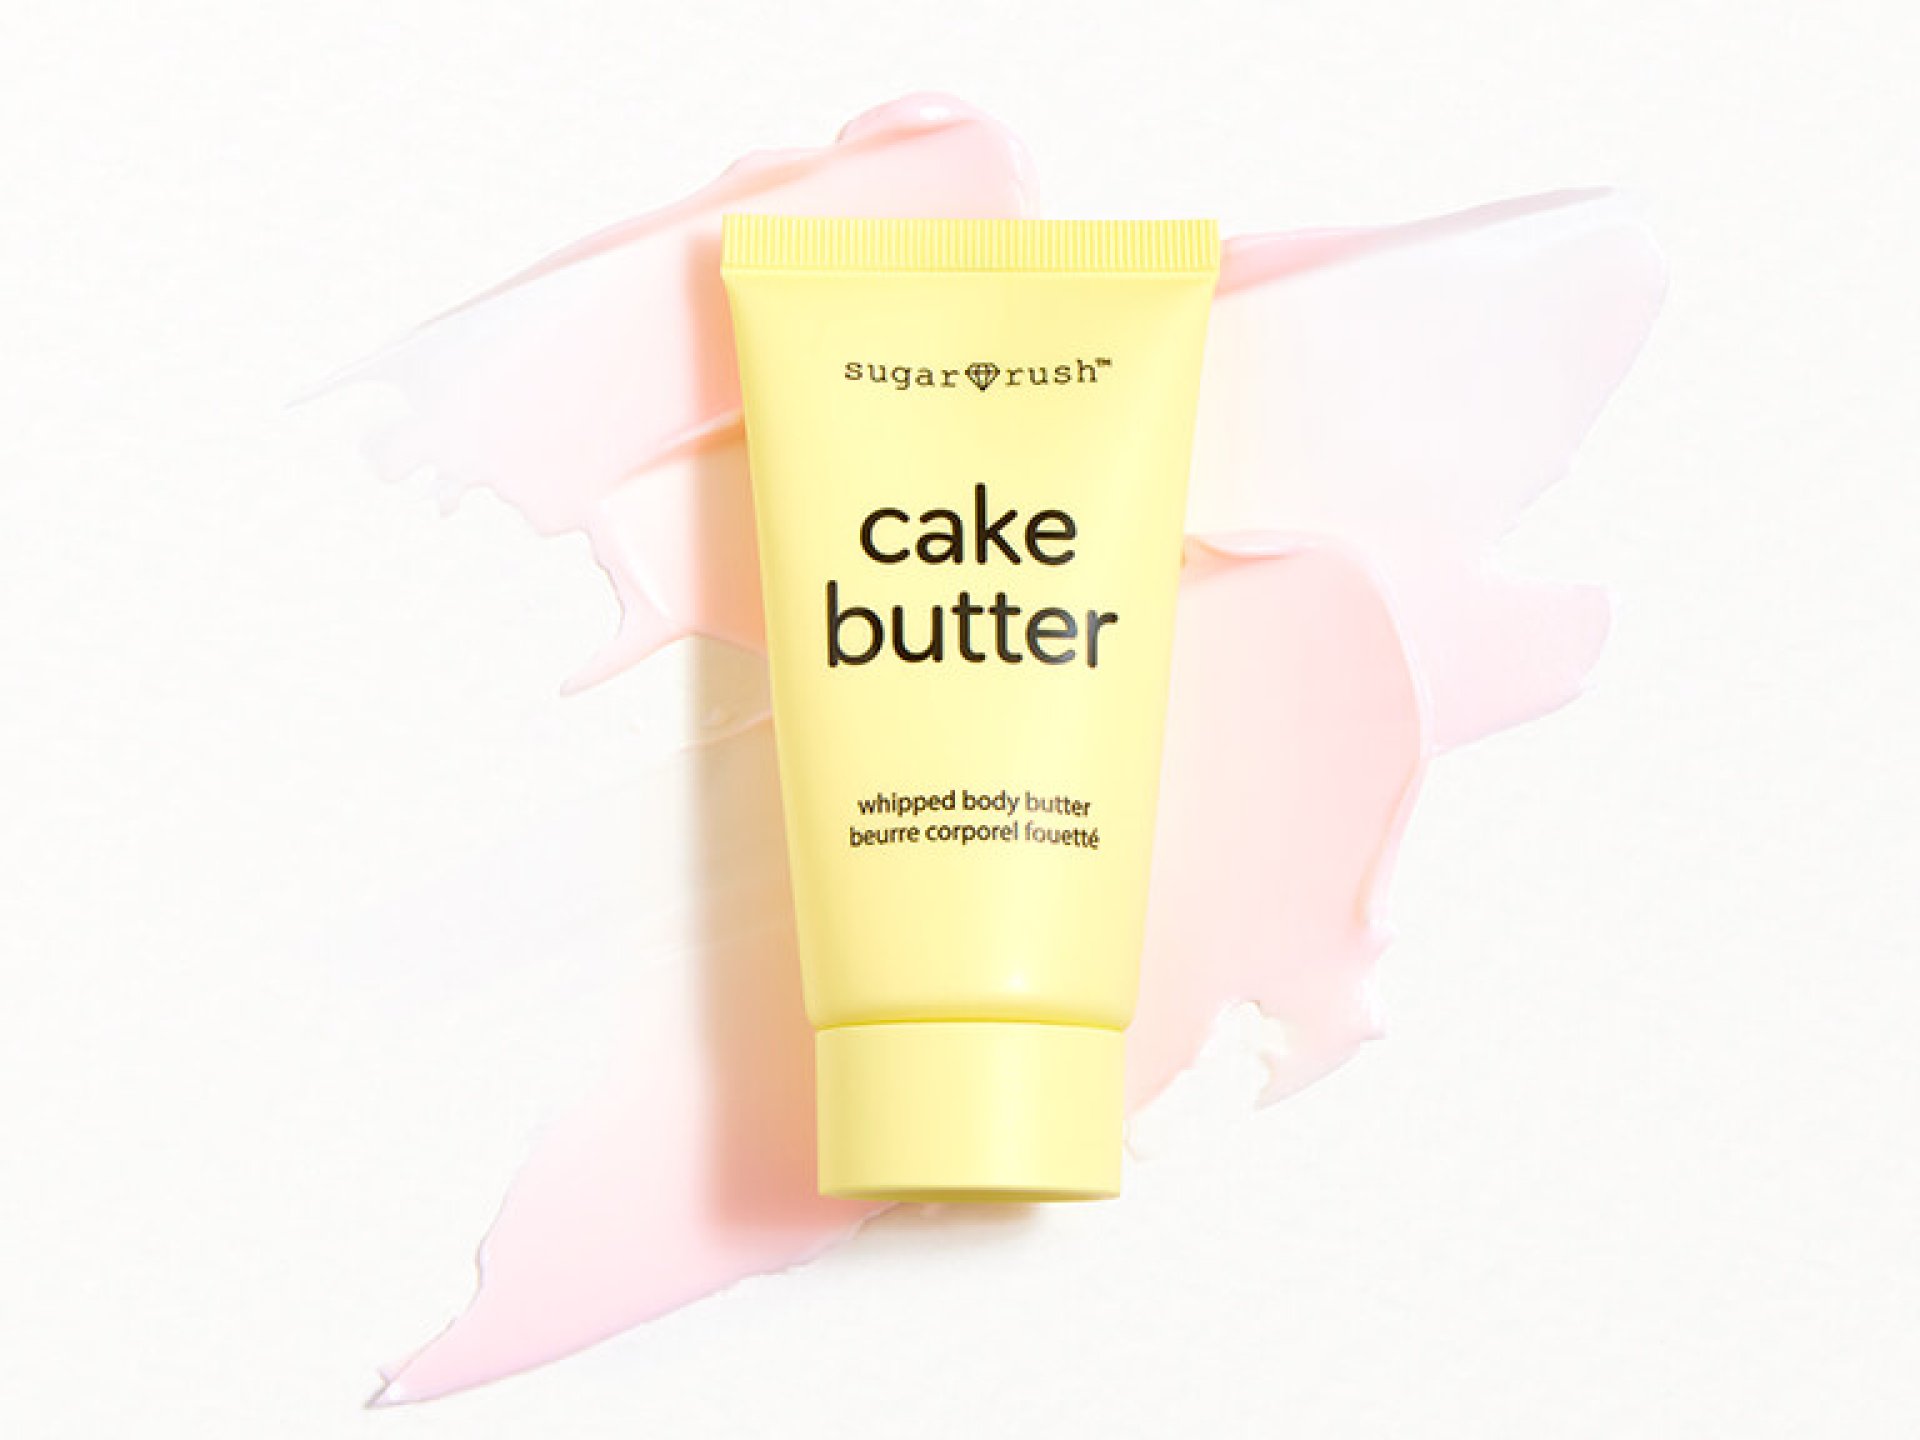 TARTE SUGAR RUSH™ Cake Butter Whipped Body Butter